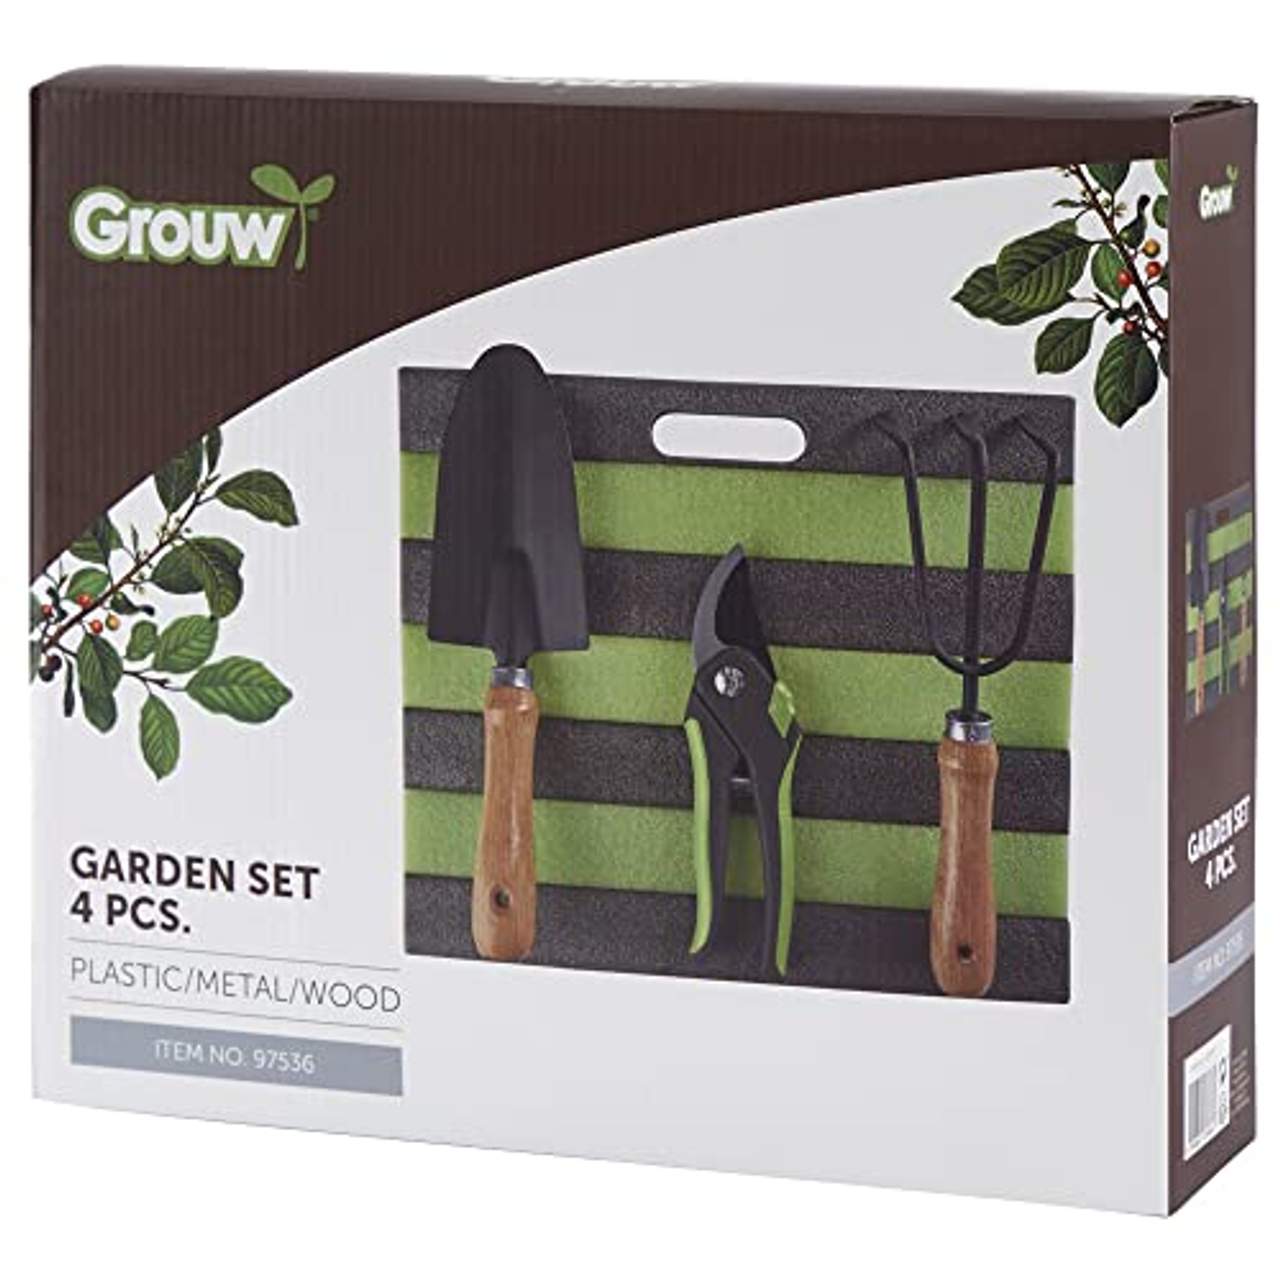 Grouw Gartenwerkzeug für die Gartenpflege